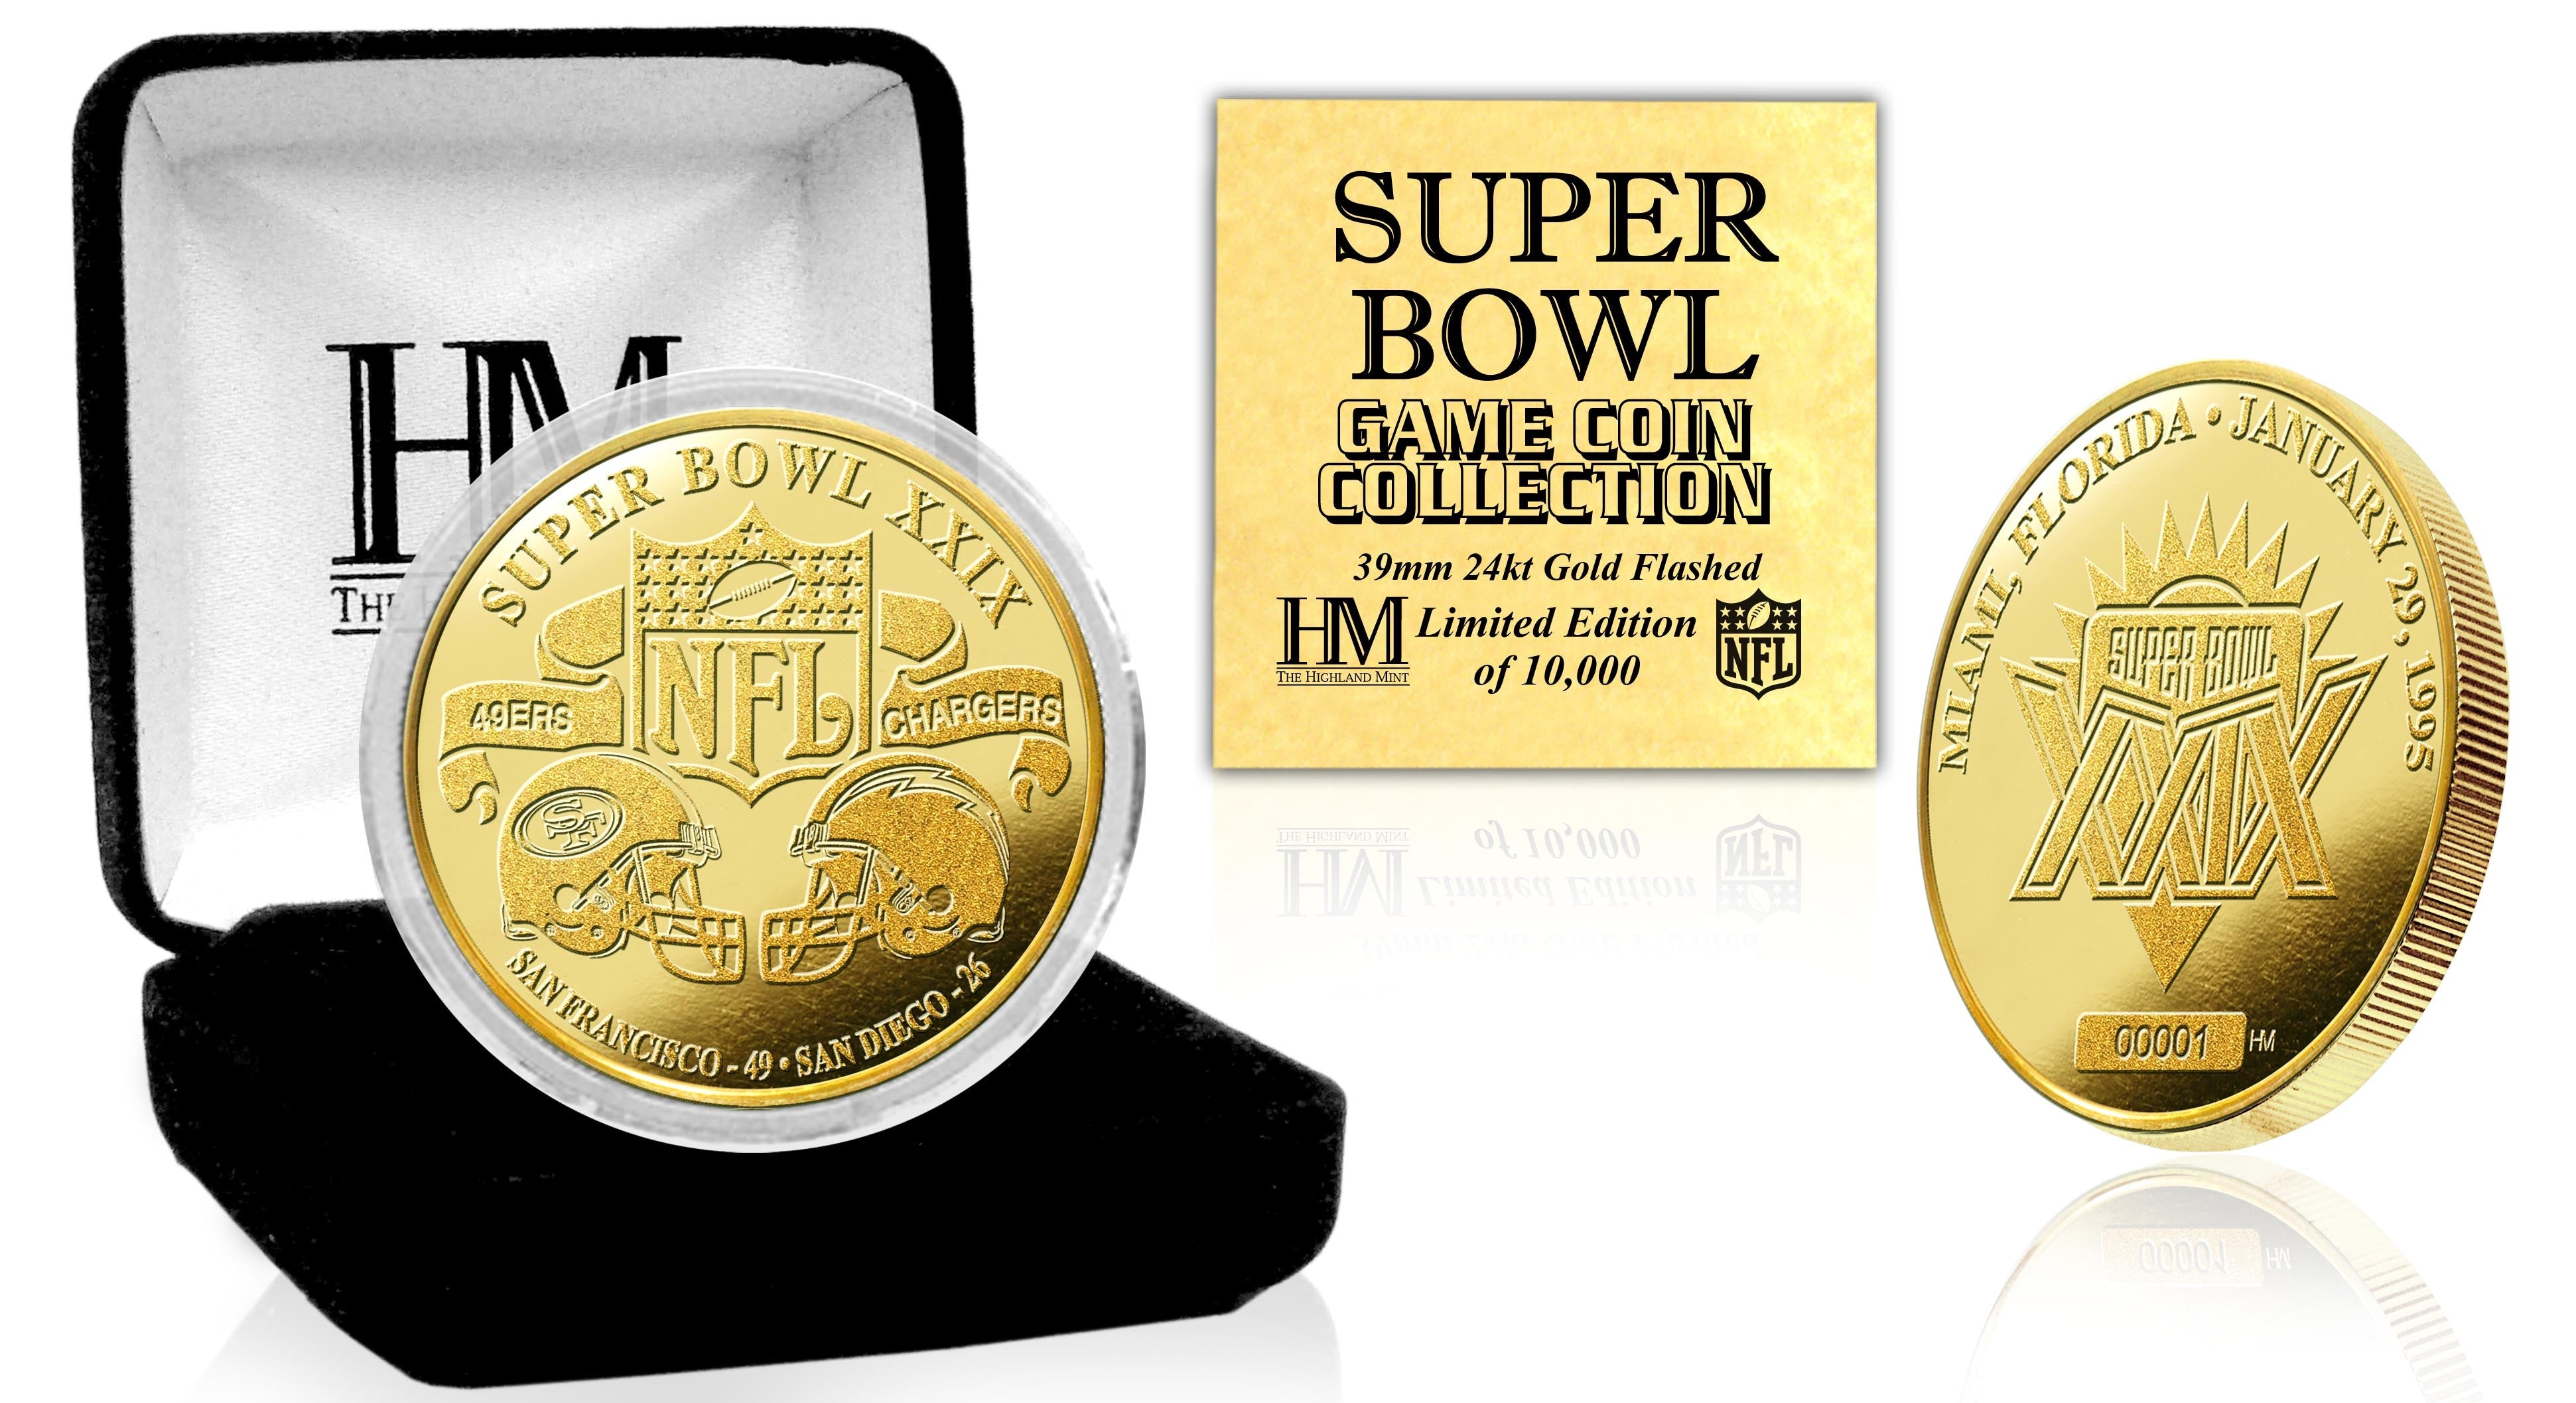 Super Bowl XXIX 24kt Gold Flip Coin